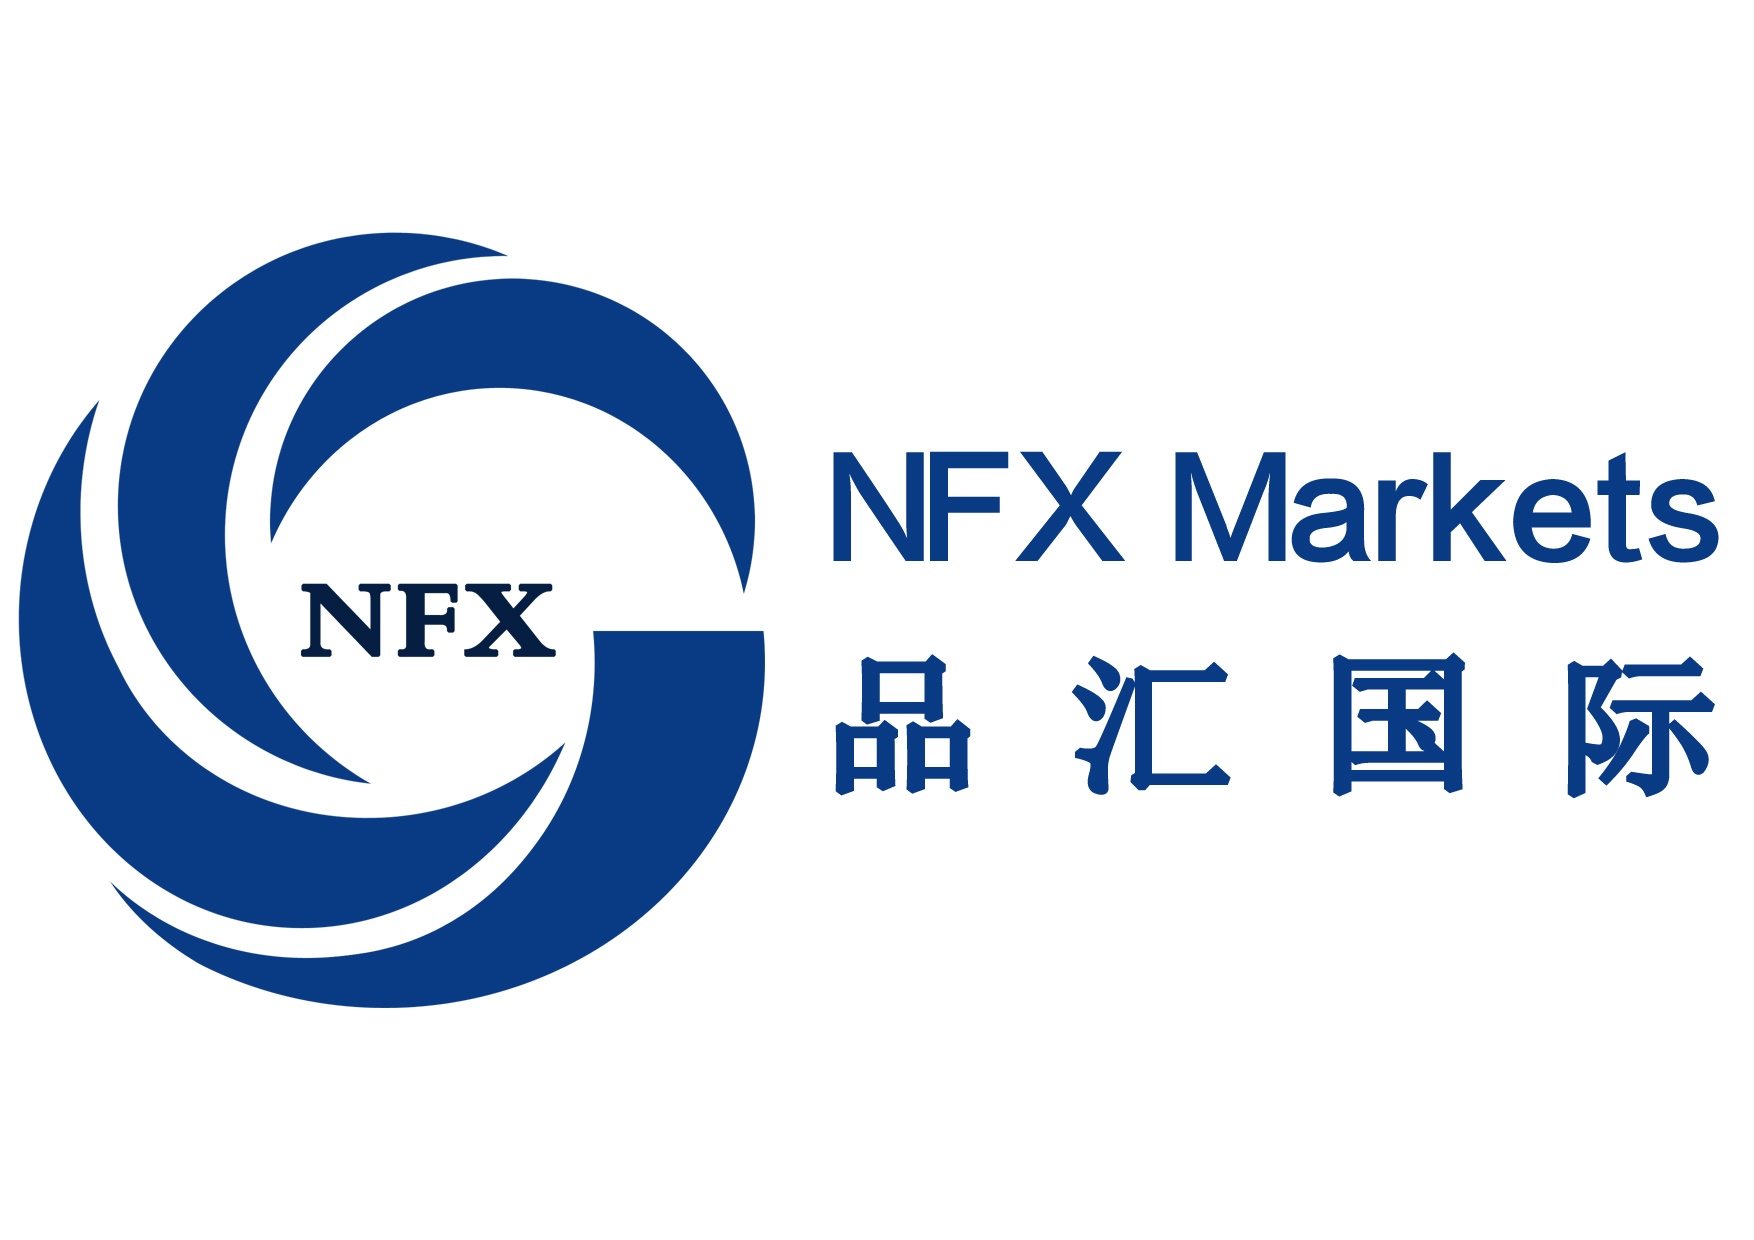 NFX Markets